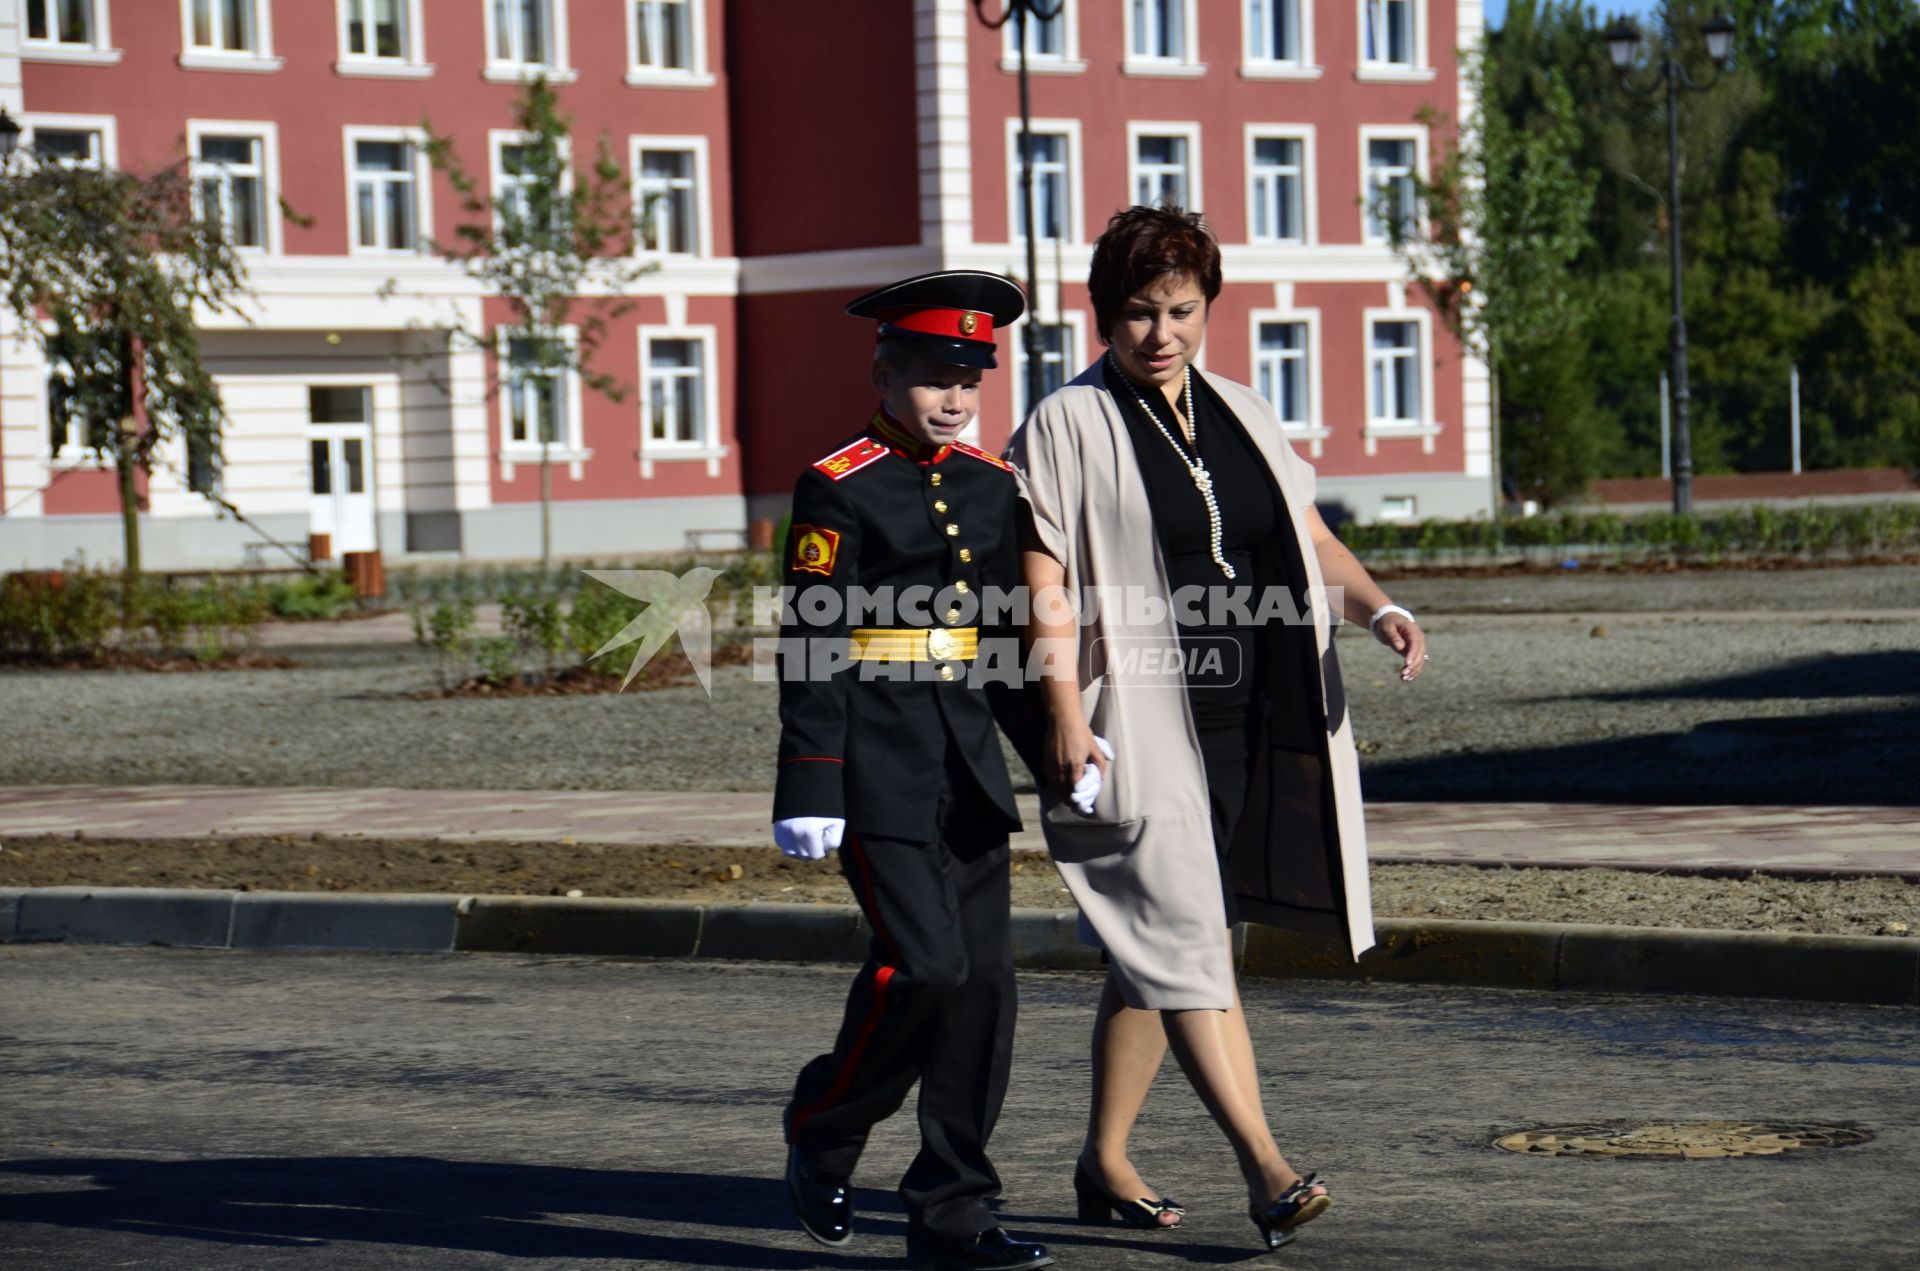 Тула.  Суворовец перед торжественной линейкой, посвященной Дню знаний, во вновь открывшемся суворовском училище.